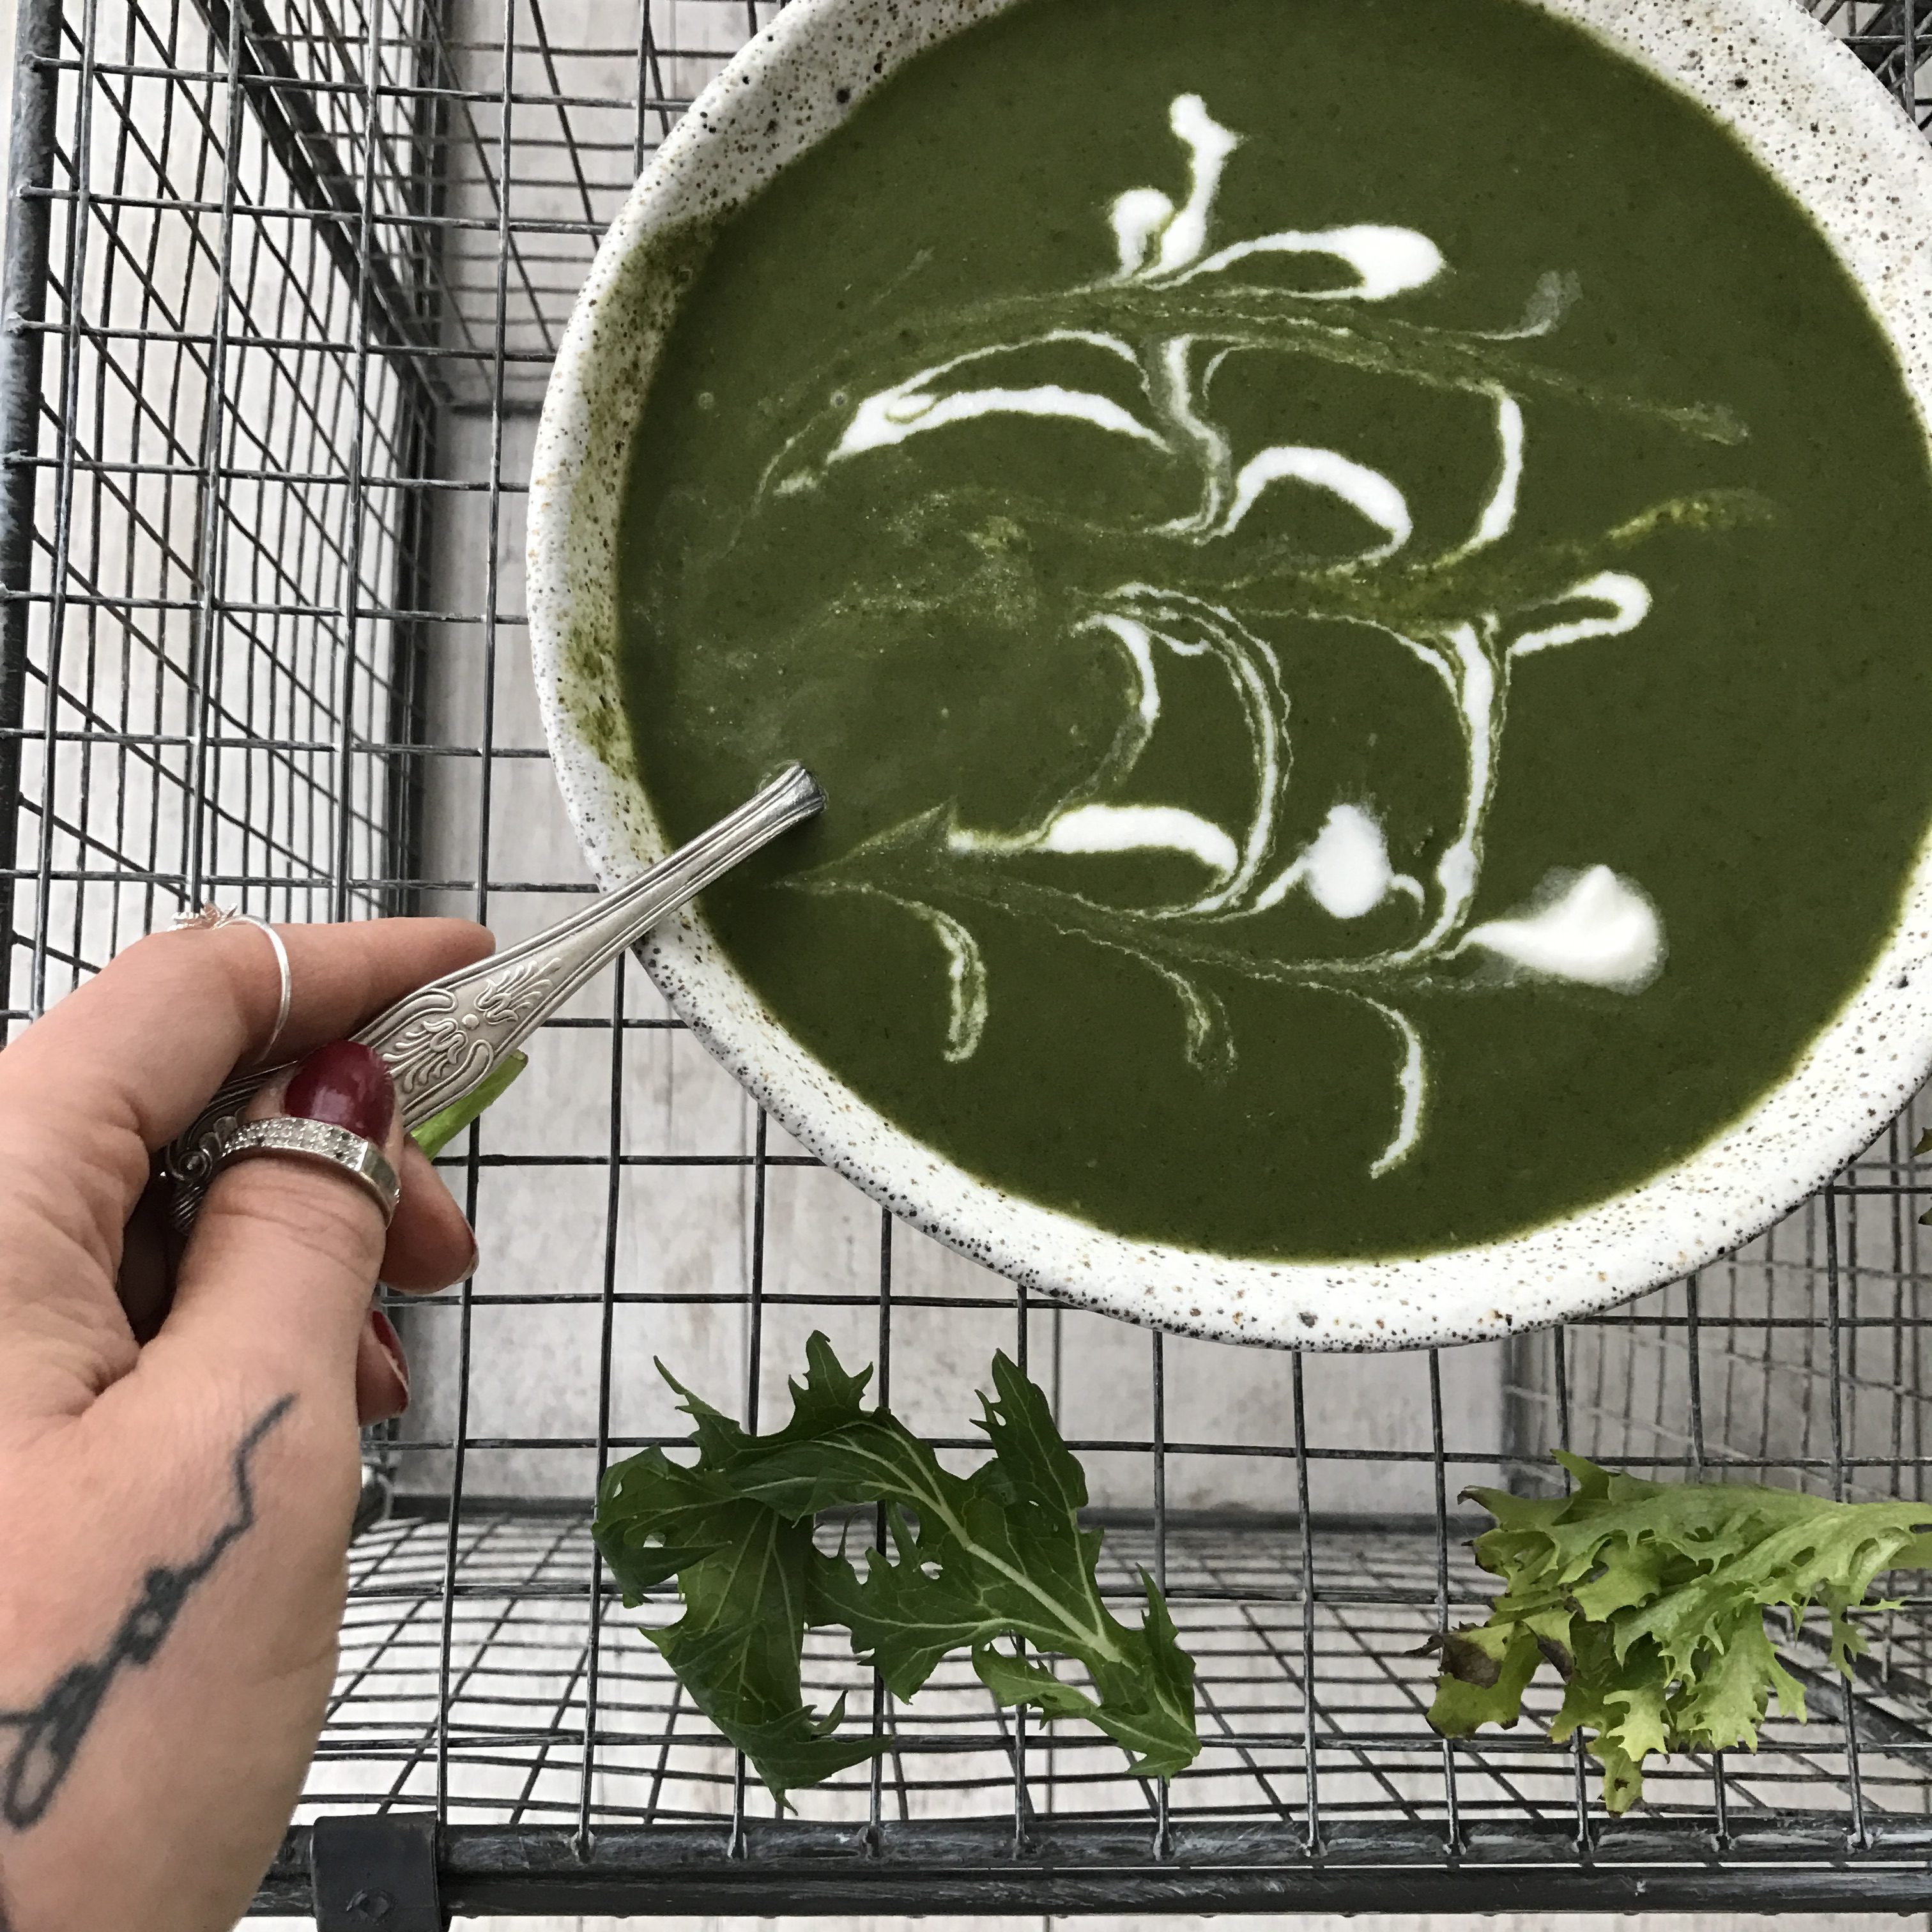 green soup